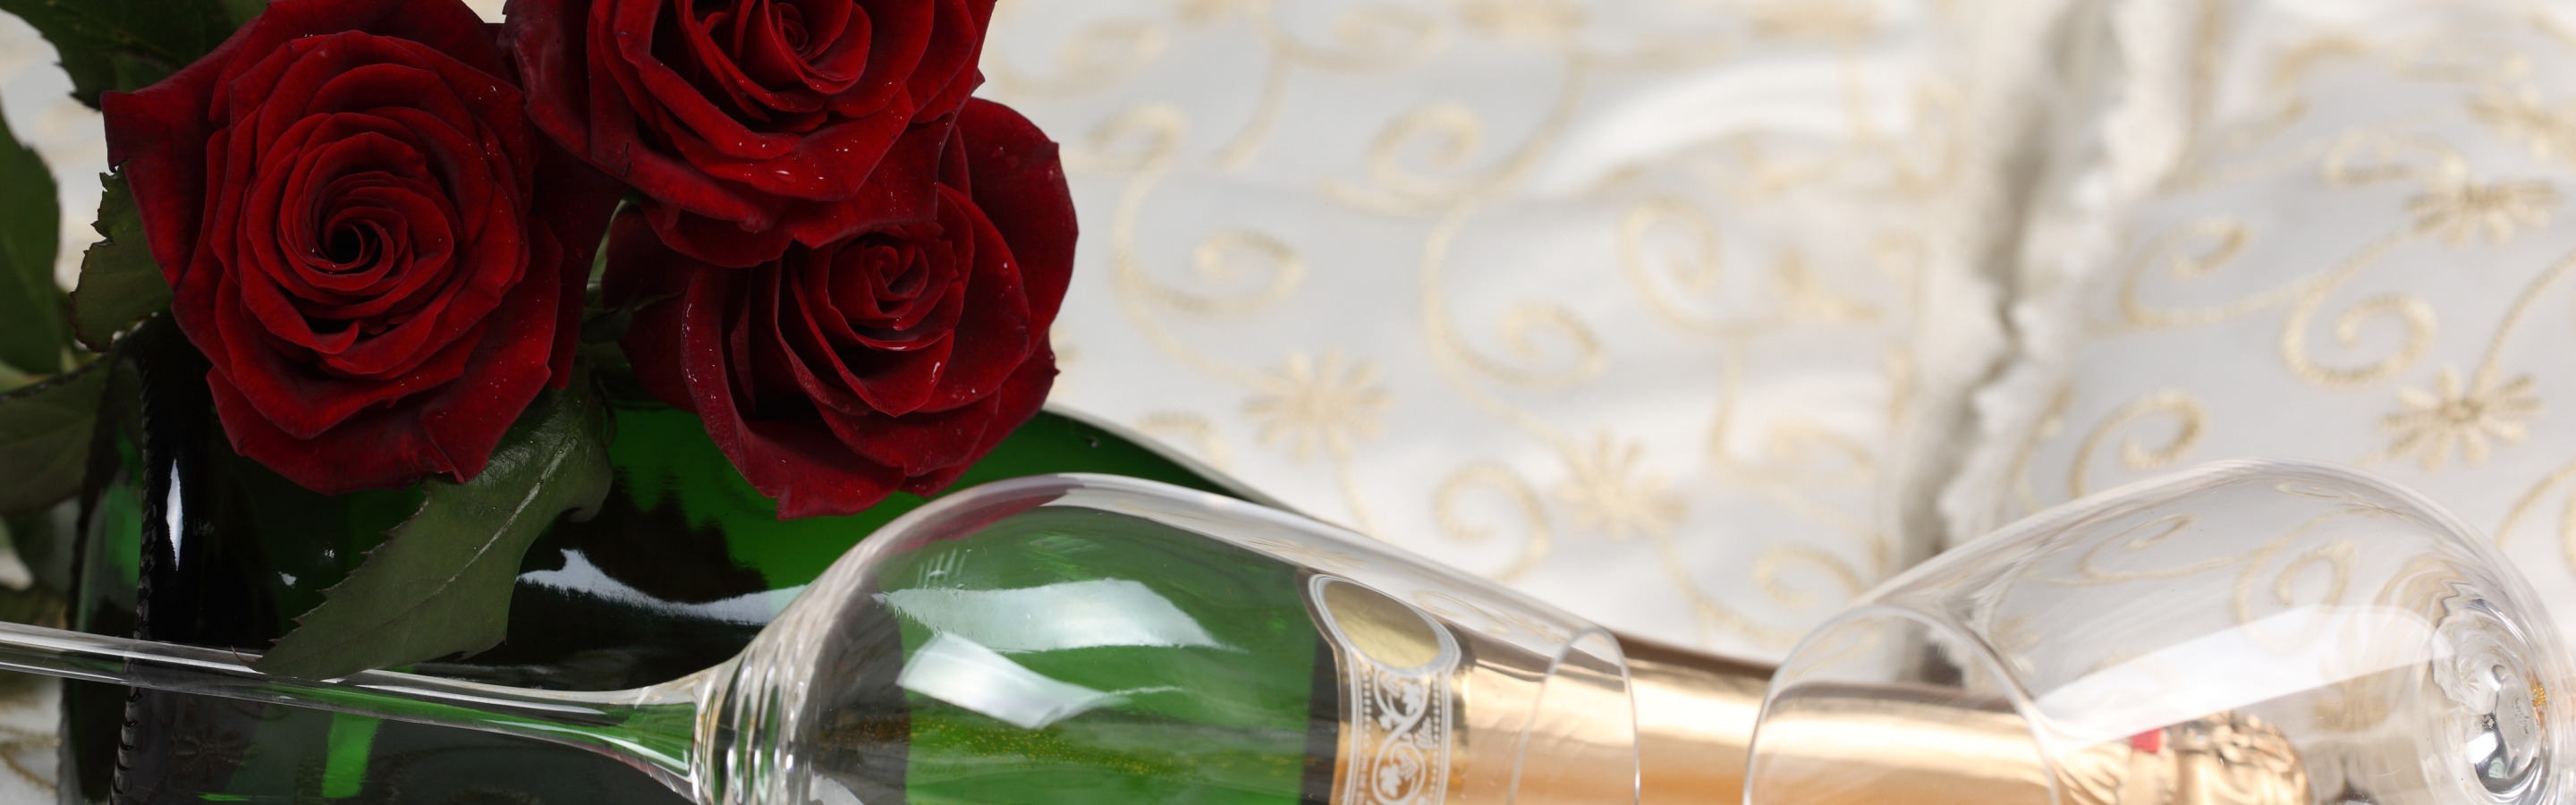 Шампанское и розы 34 экстра глава. Цветы и шампанское. Шампанское и розы. Фон шампанское цветы. Свадебный торт и шампанское.